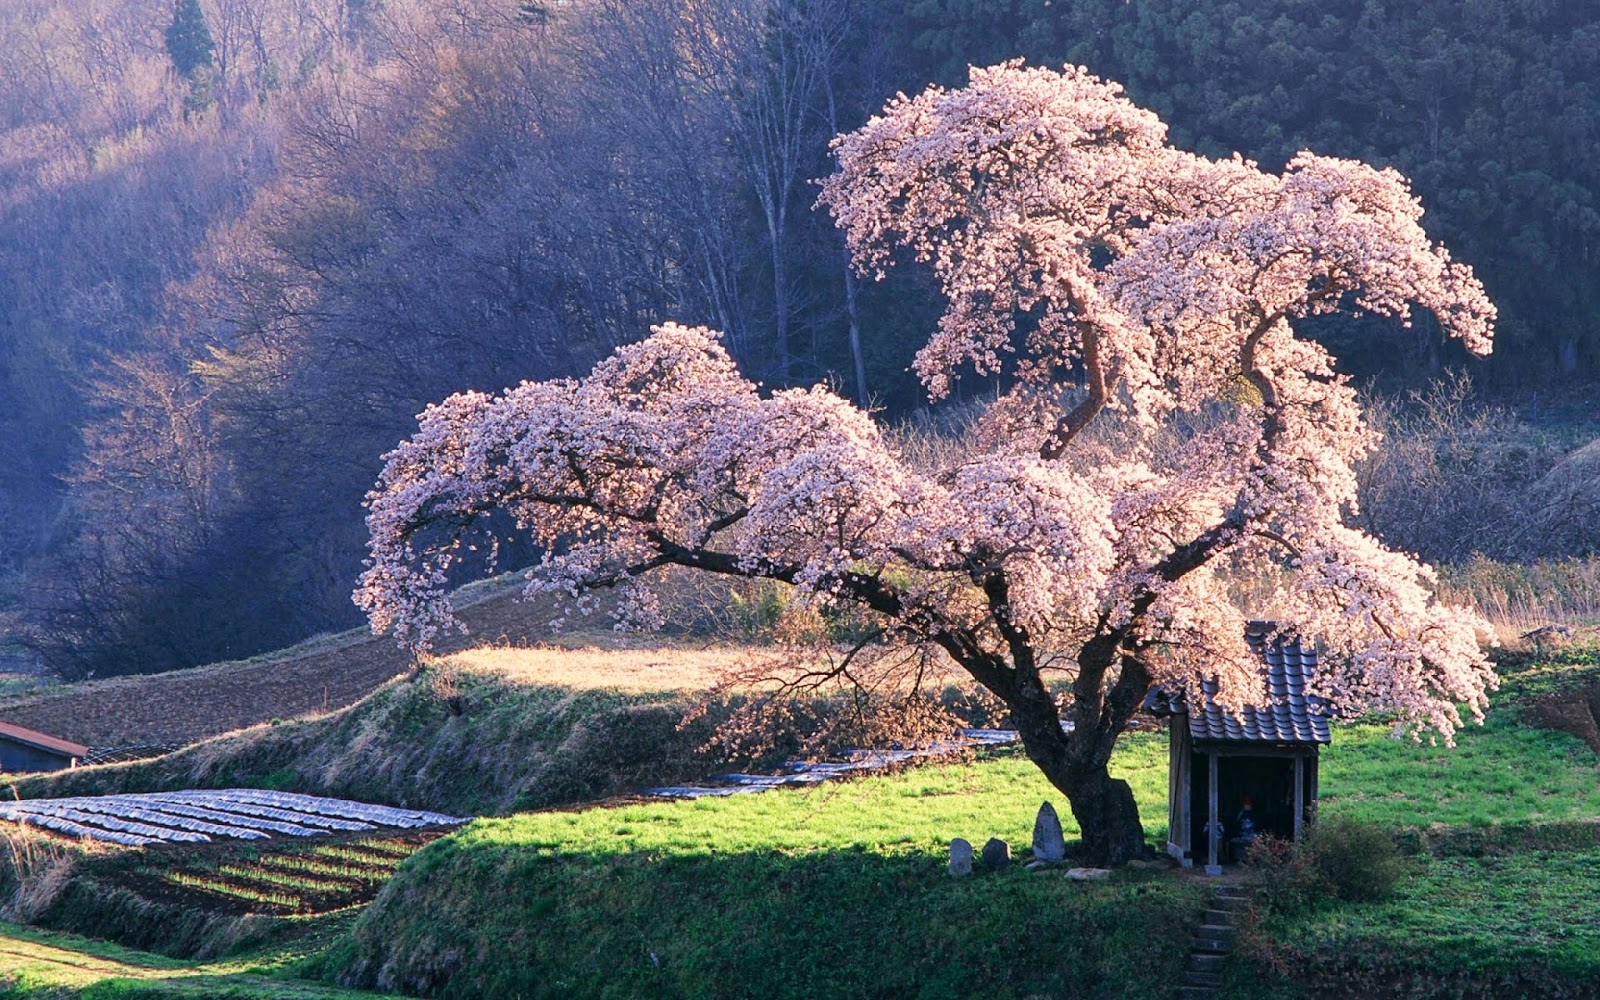 Japanese Cherry Blossom Garden Wallpaper Refreshrose Spot